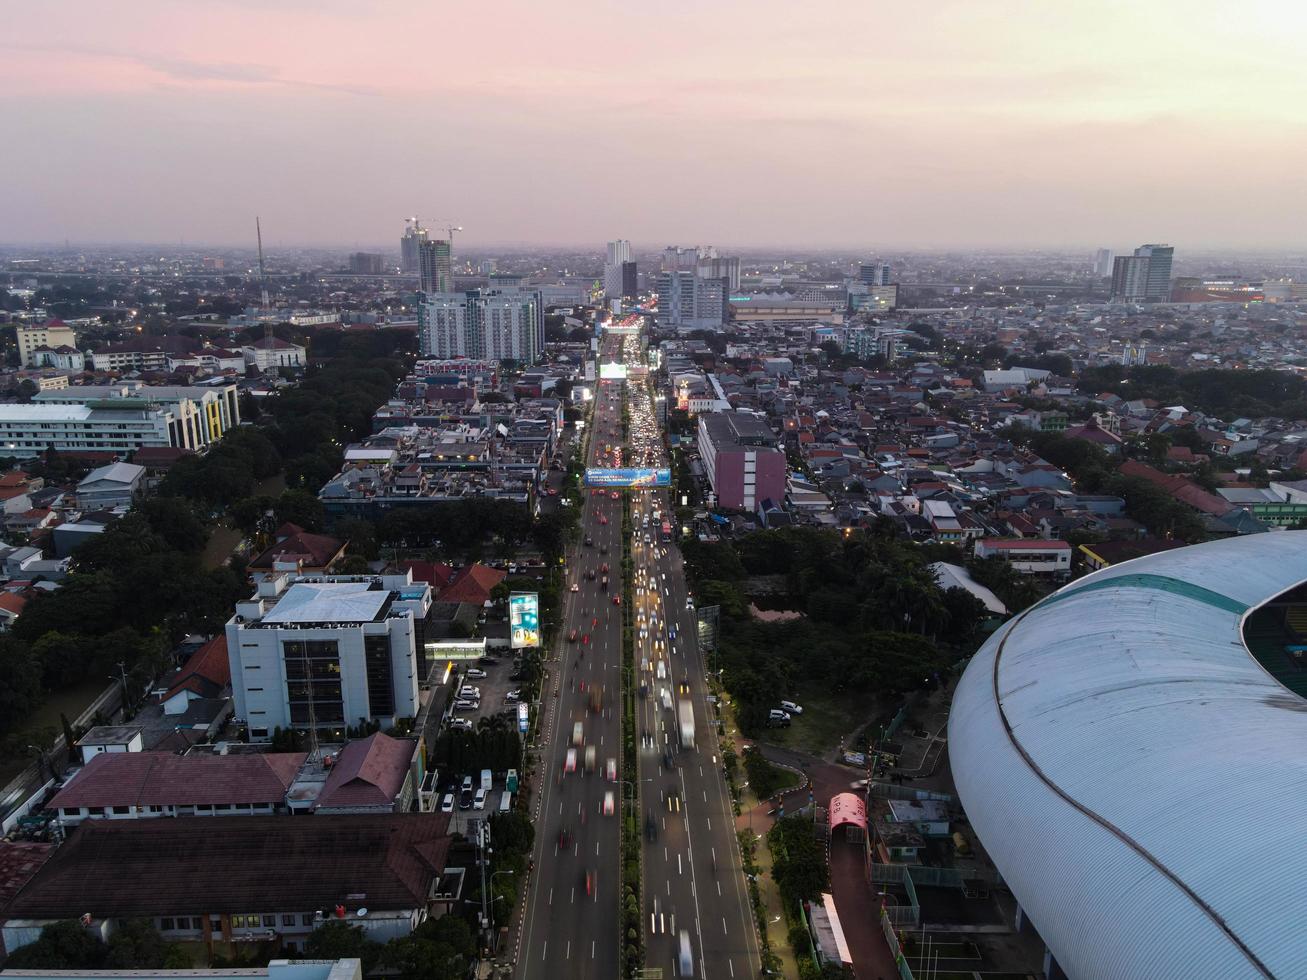 Bekasi, Indonesia 2021- Vista aérea del estadio más grande de Bekasi desde un dron con puesta de sol y nubes foto